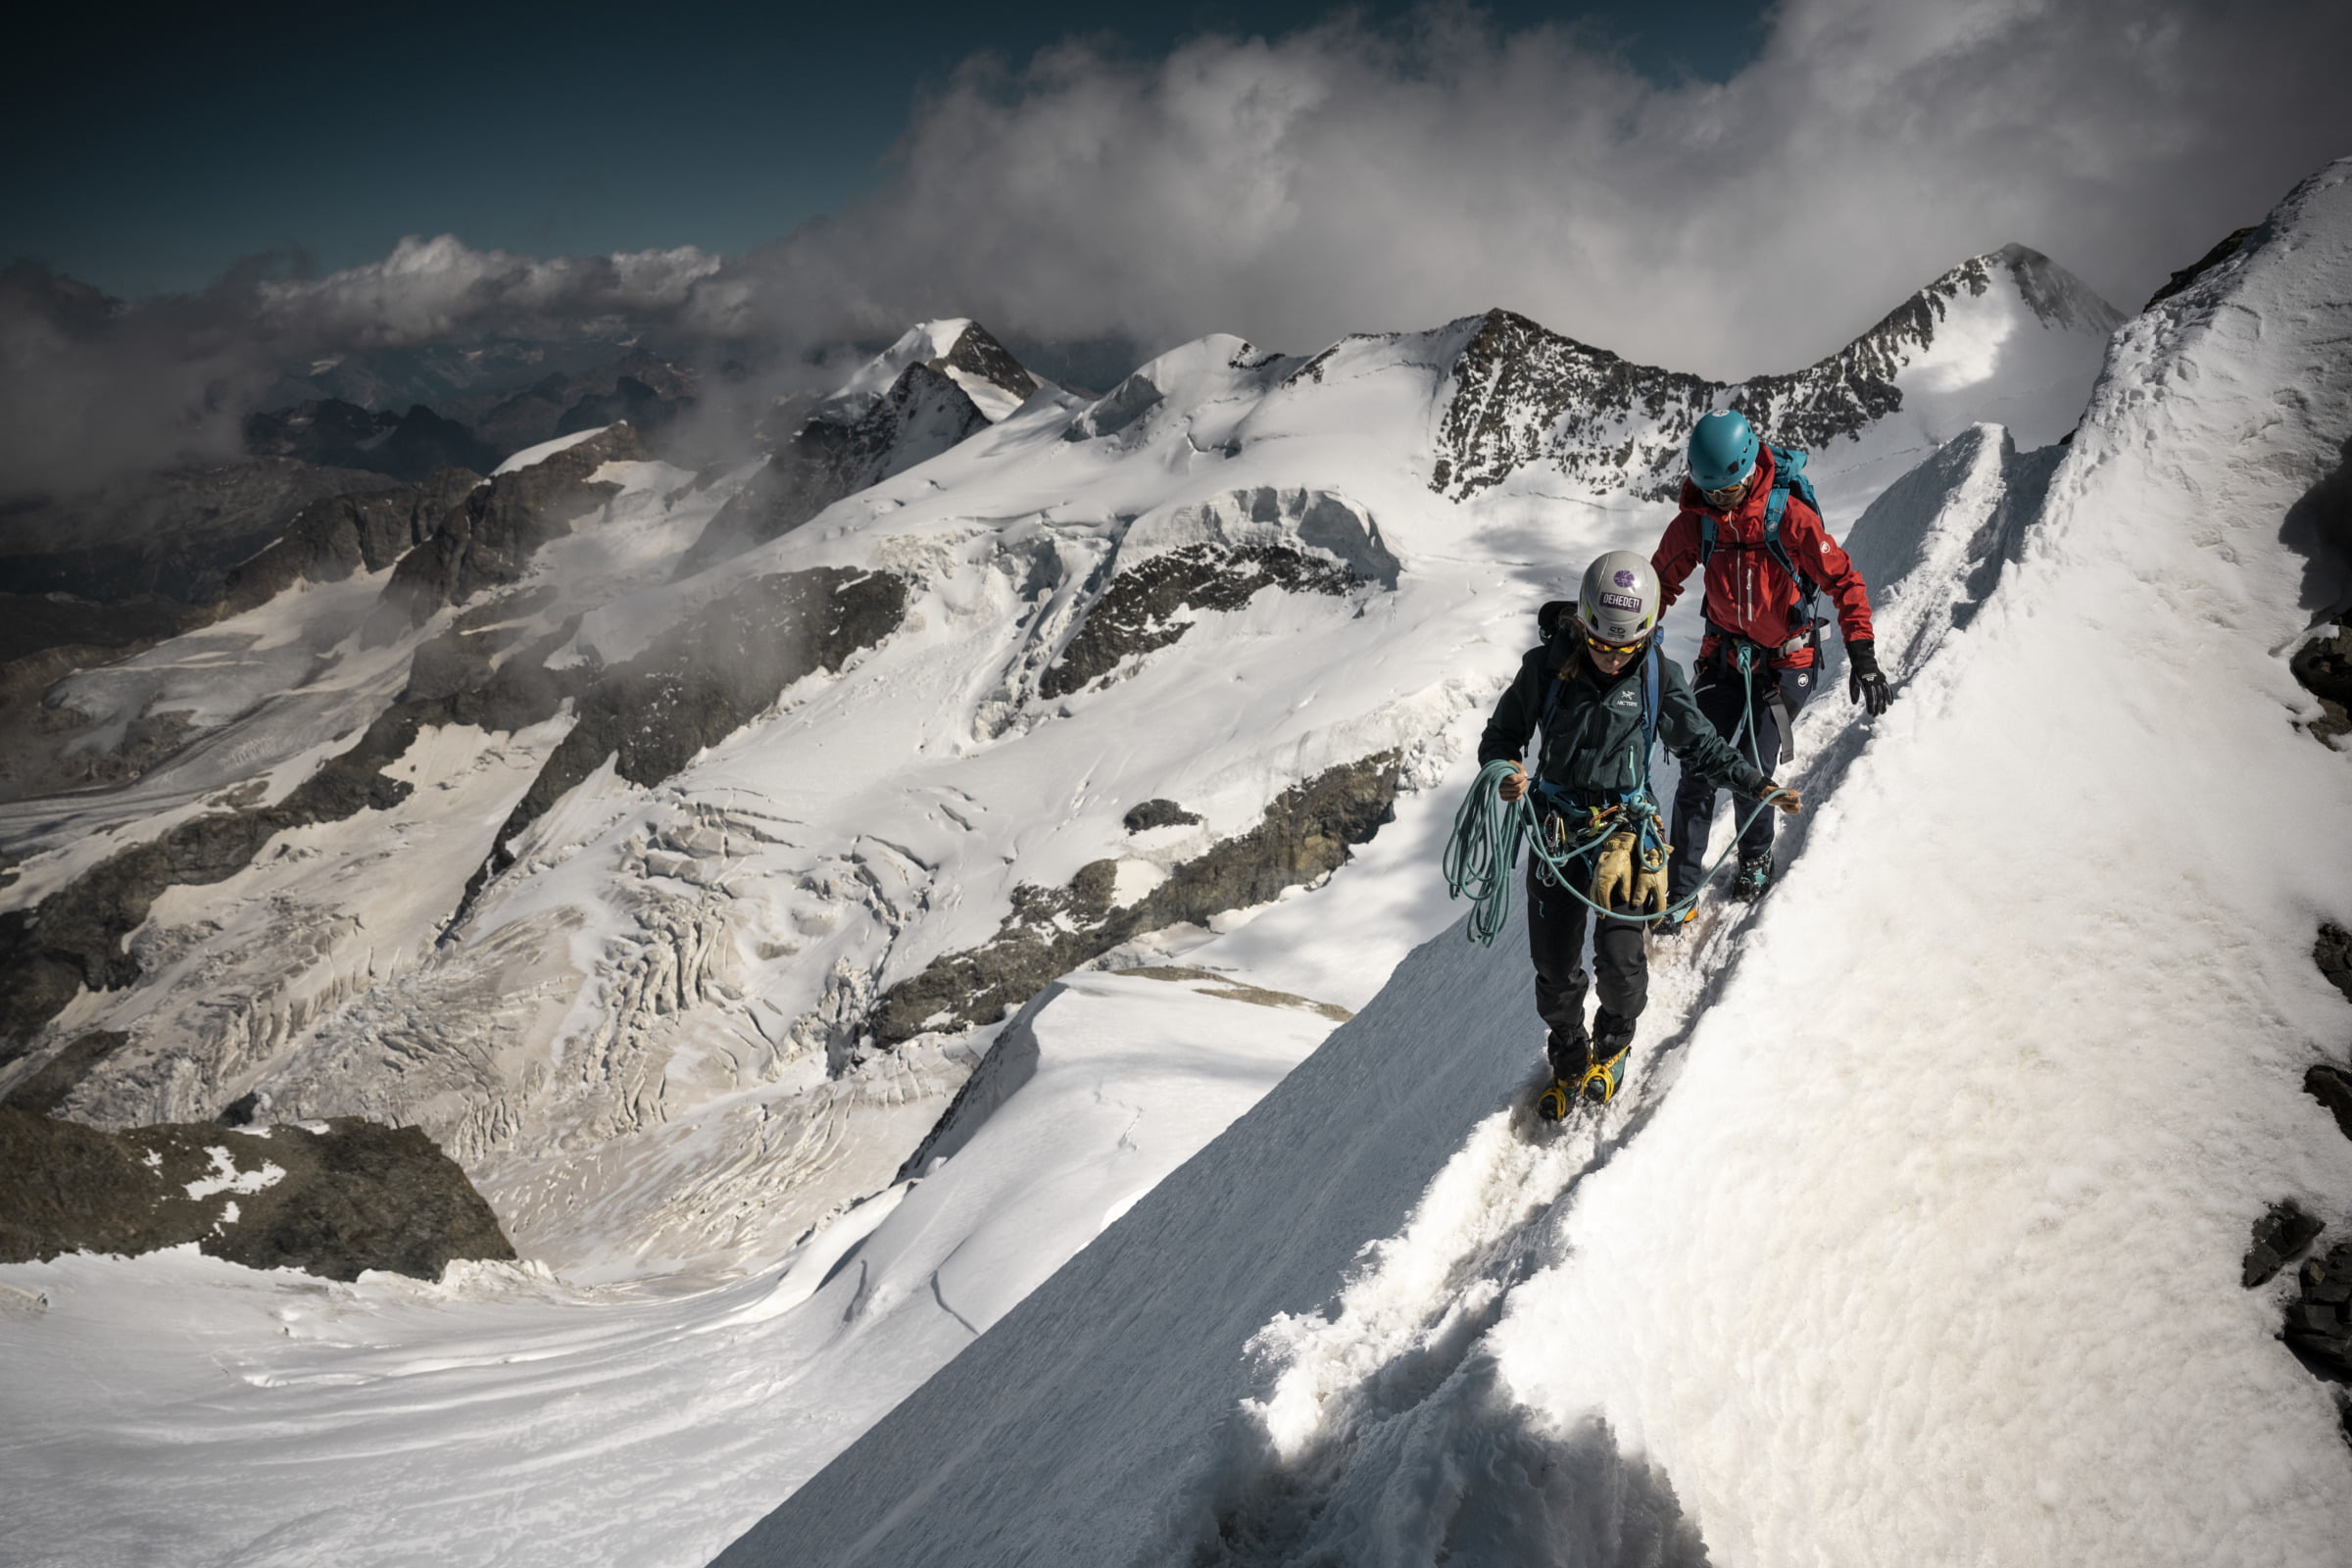 Majestic and impressive: the Bernina Alps